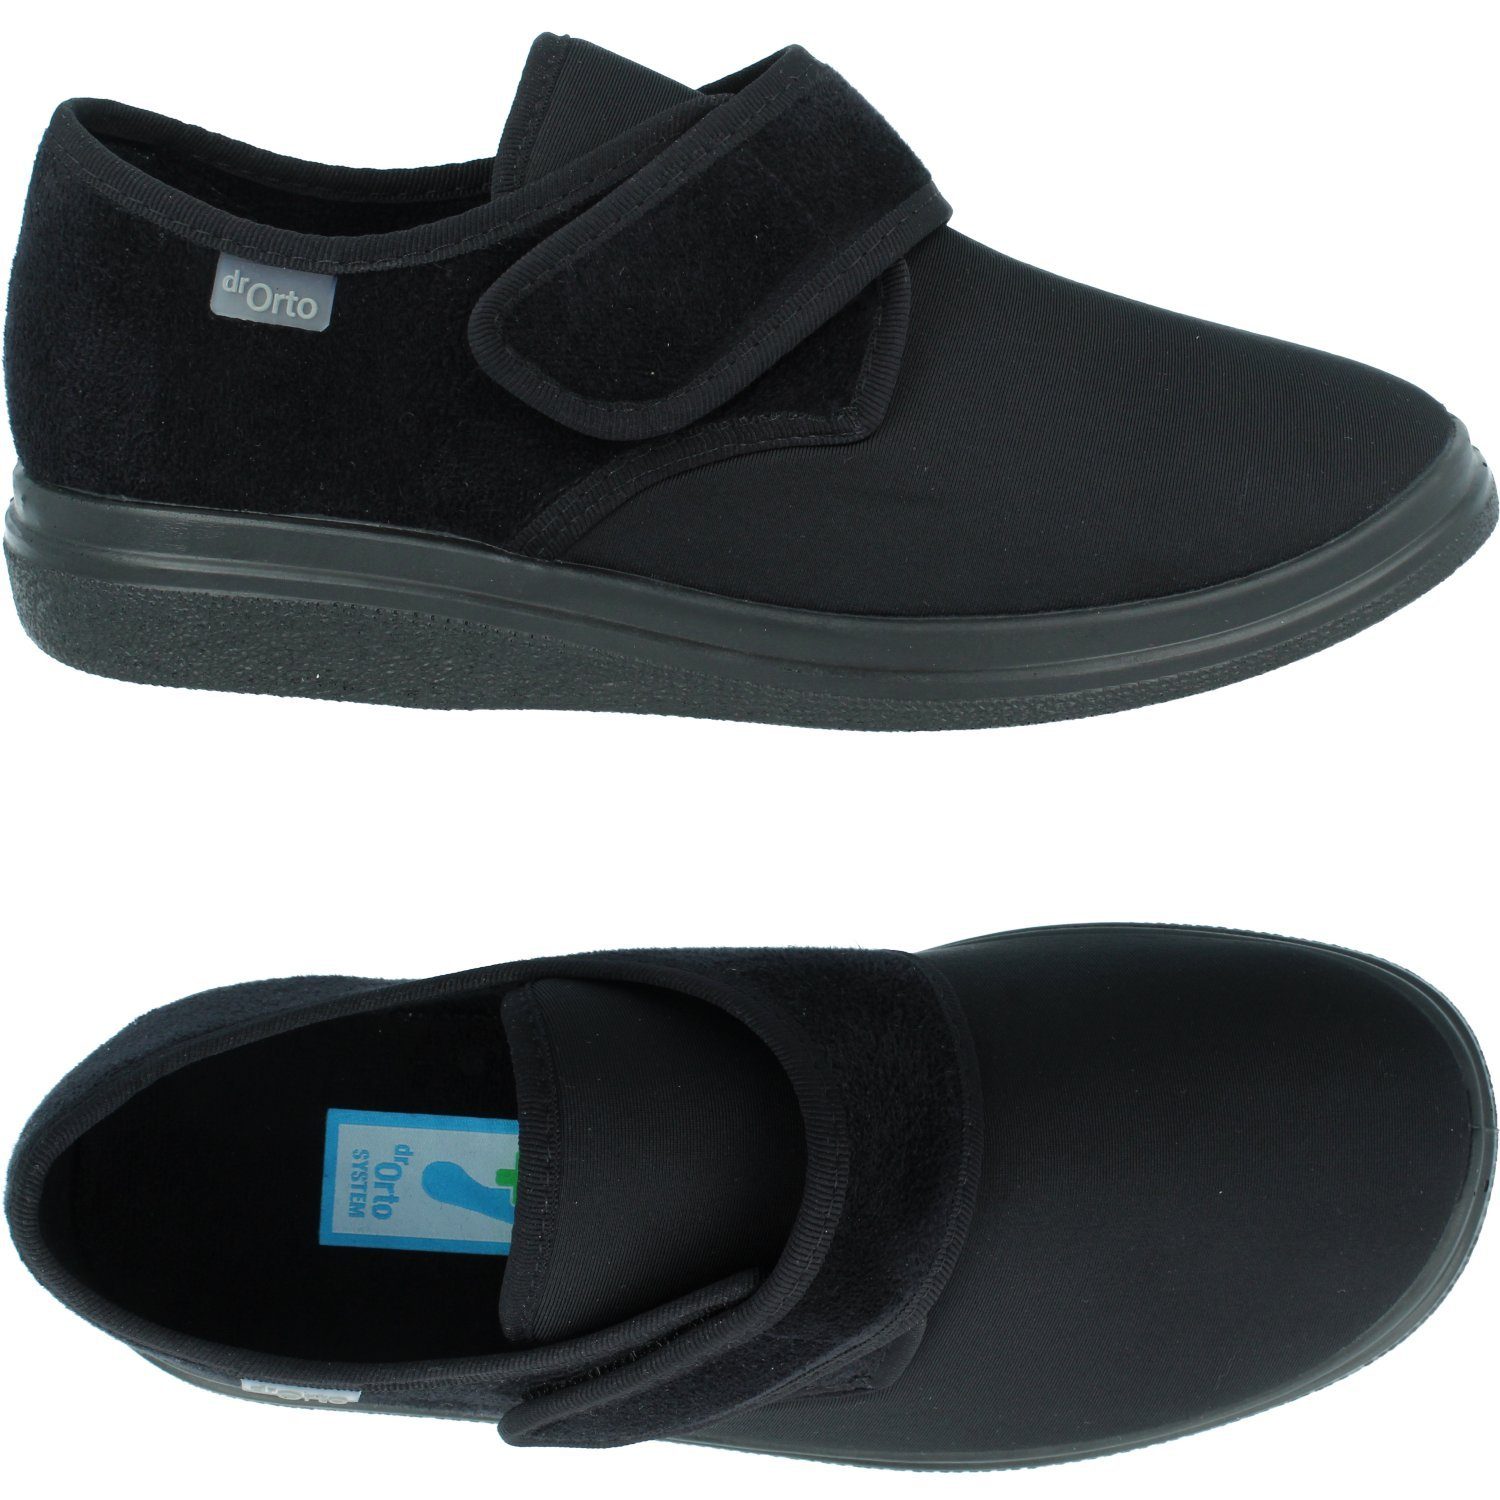 Dr. Orto »Medizinische Schuhe (Klett-Slipper) für Herren« Spezialschuh  Diabetiker Schuhe, Präventivschuhe online kaufen | OTTO